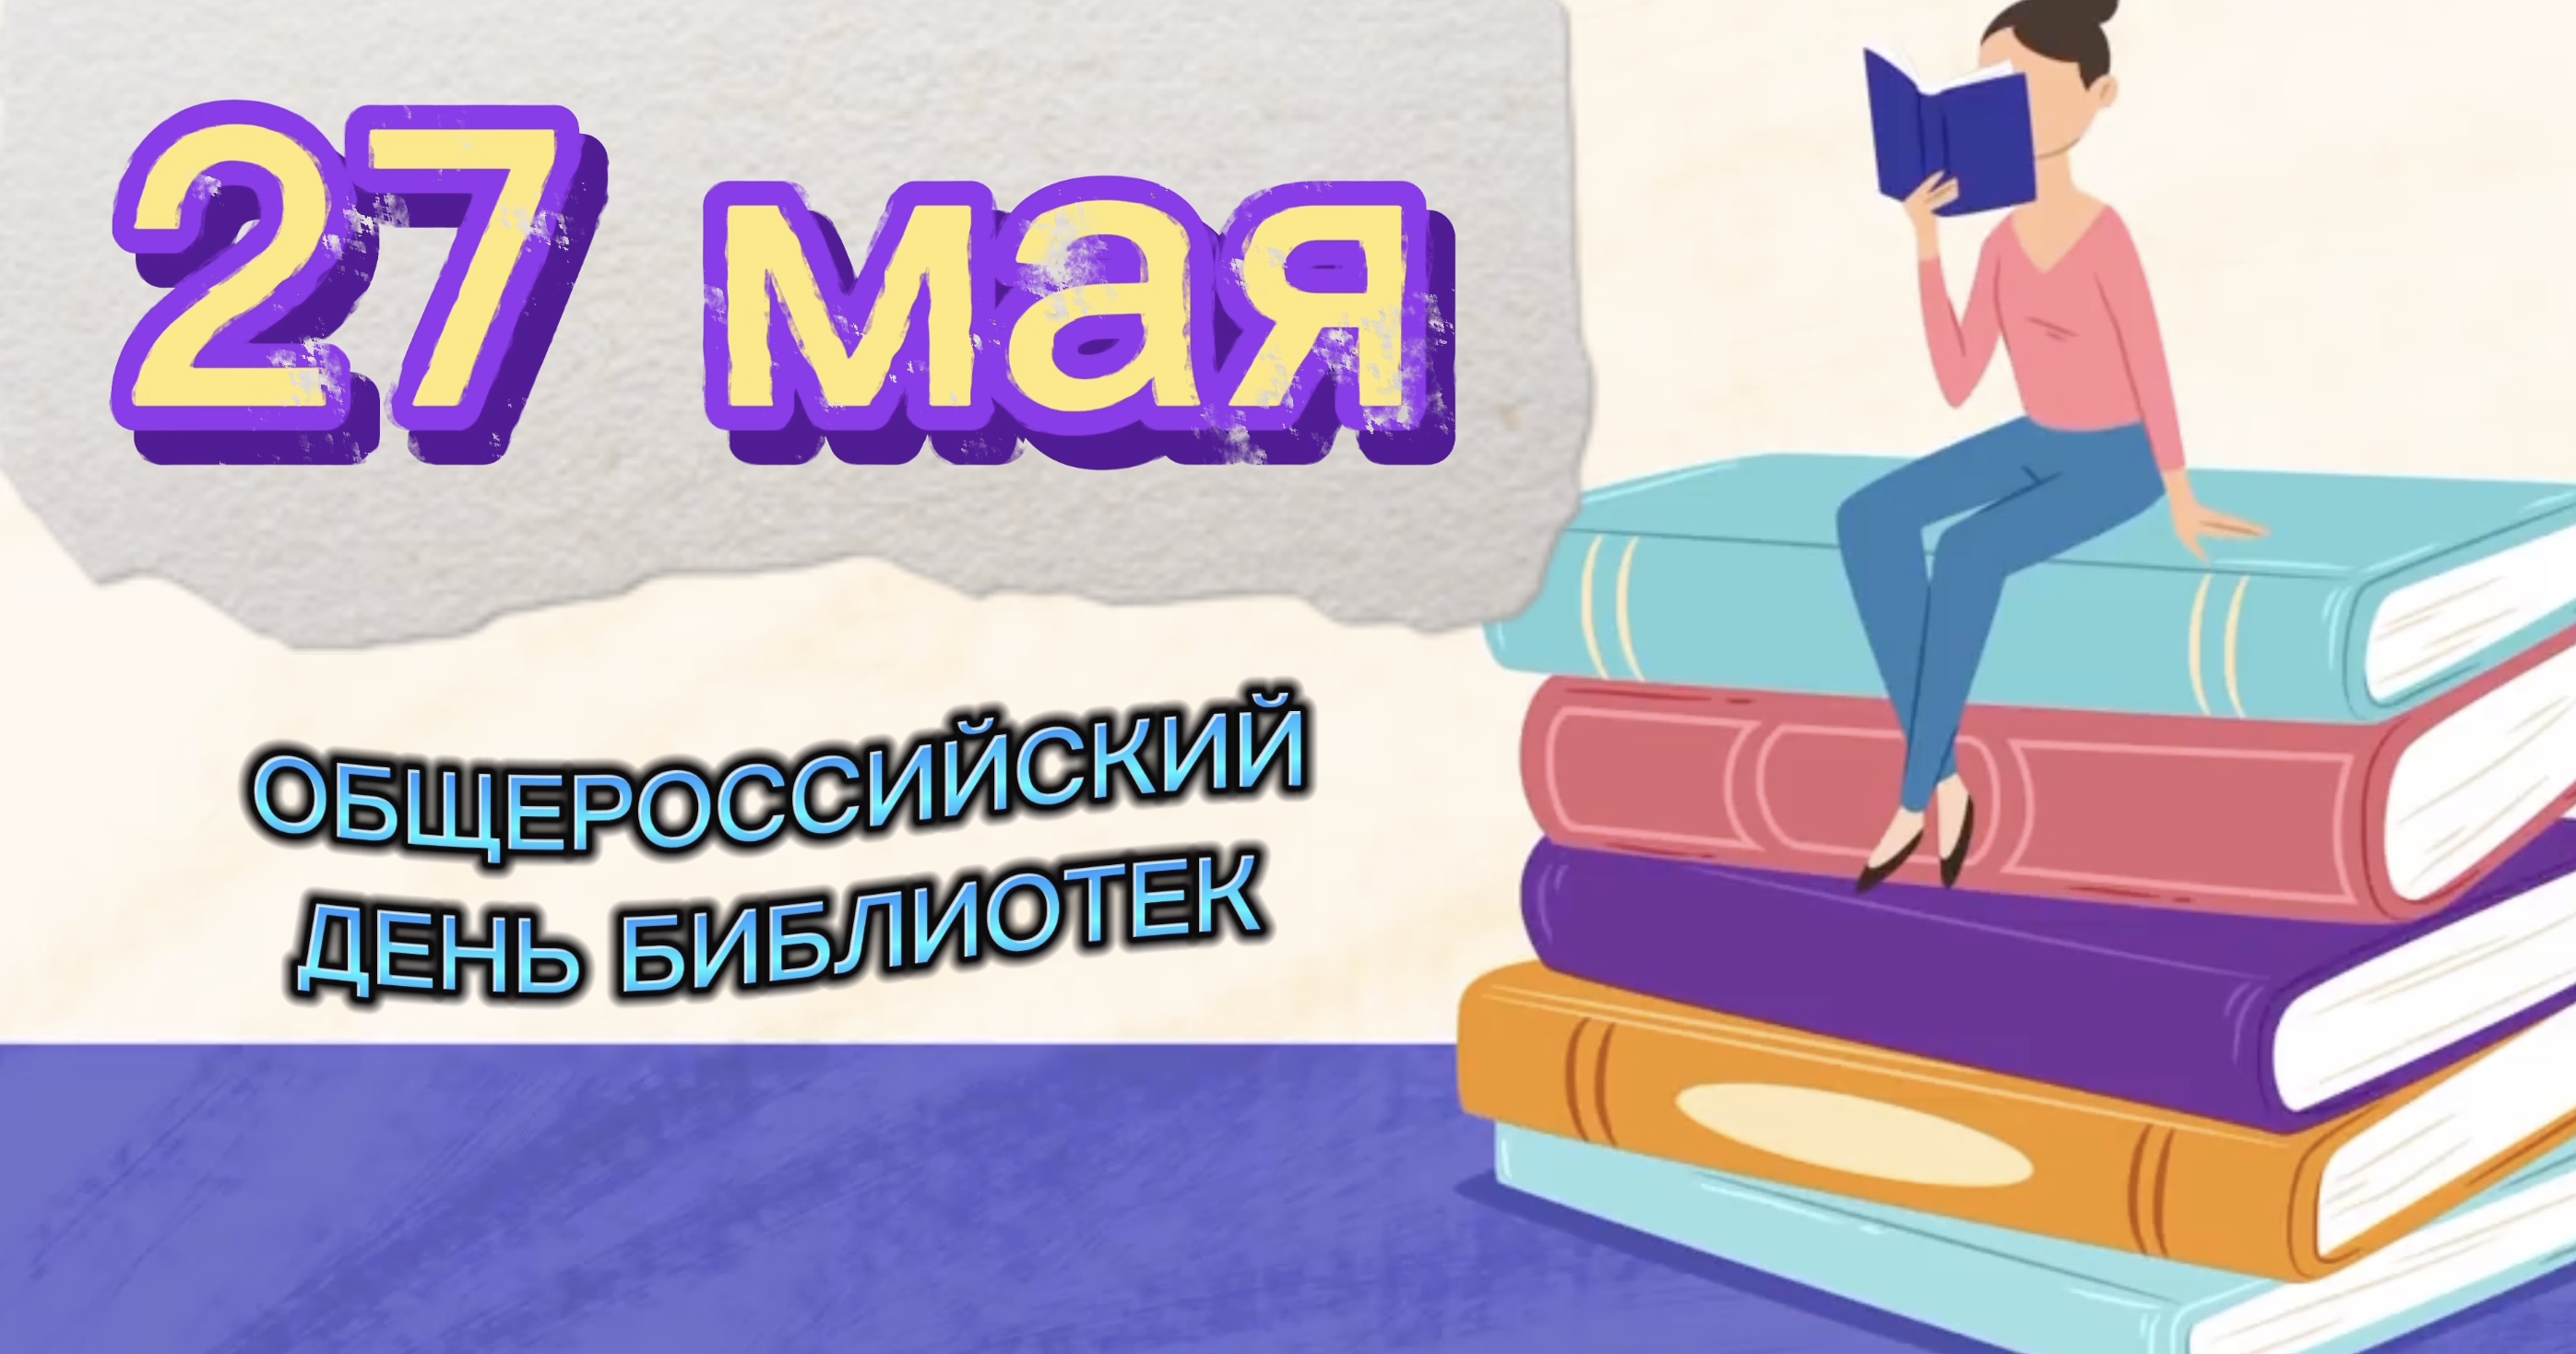 Read more about the article Поздравляем с Общероссийским днем библиотек!